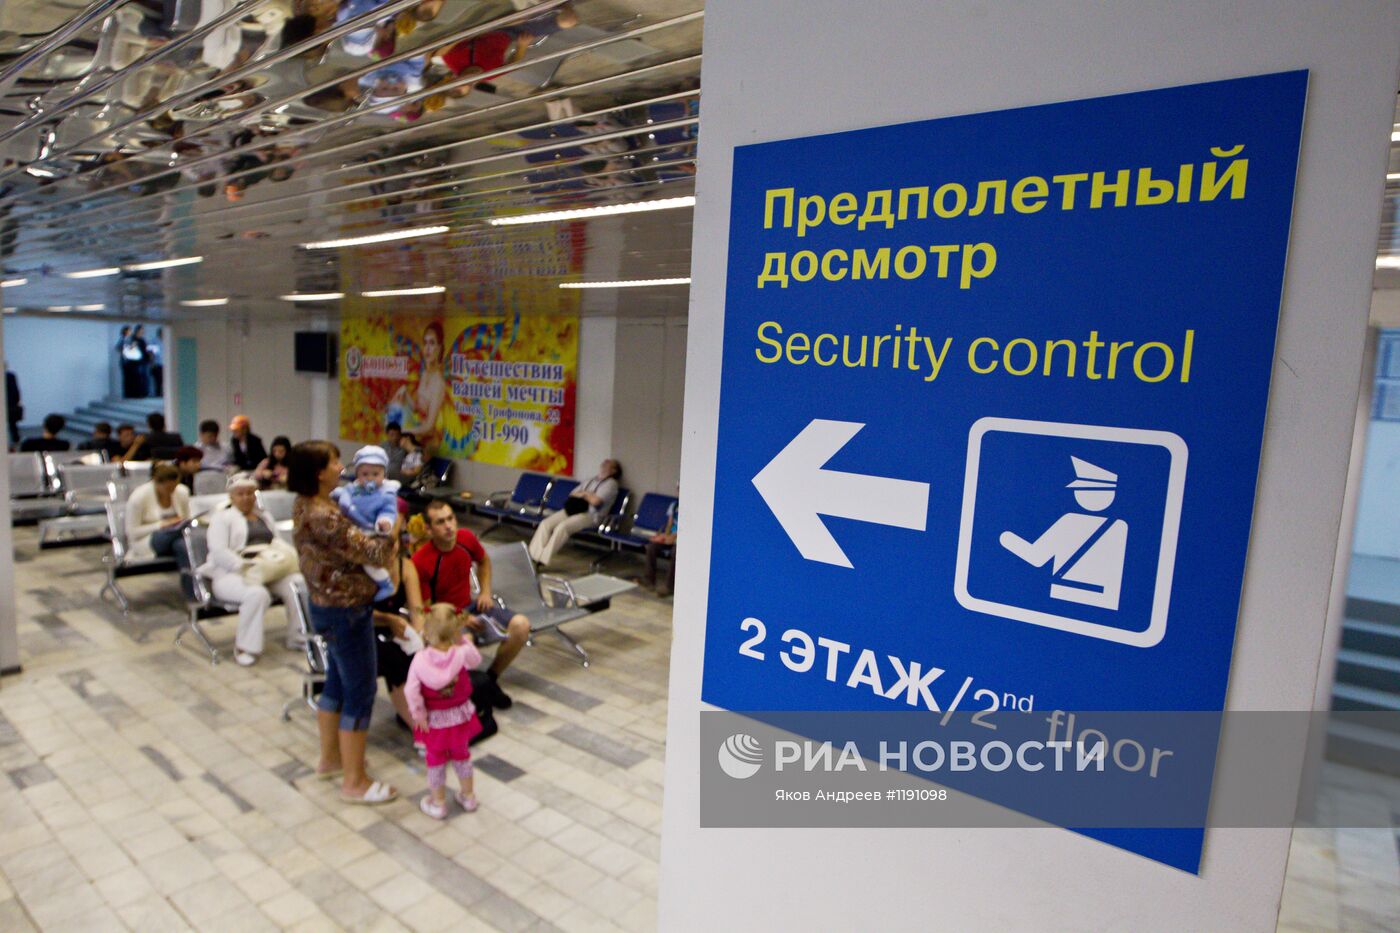 Работа аэропорта "Богашево" в Томске